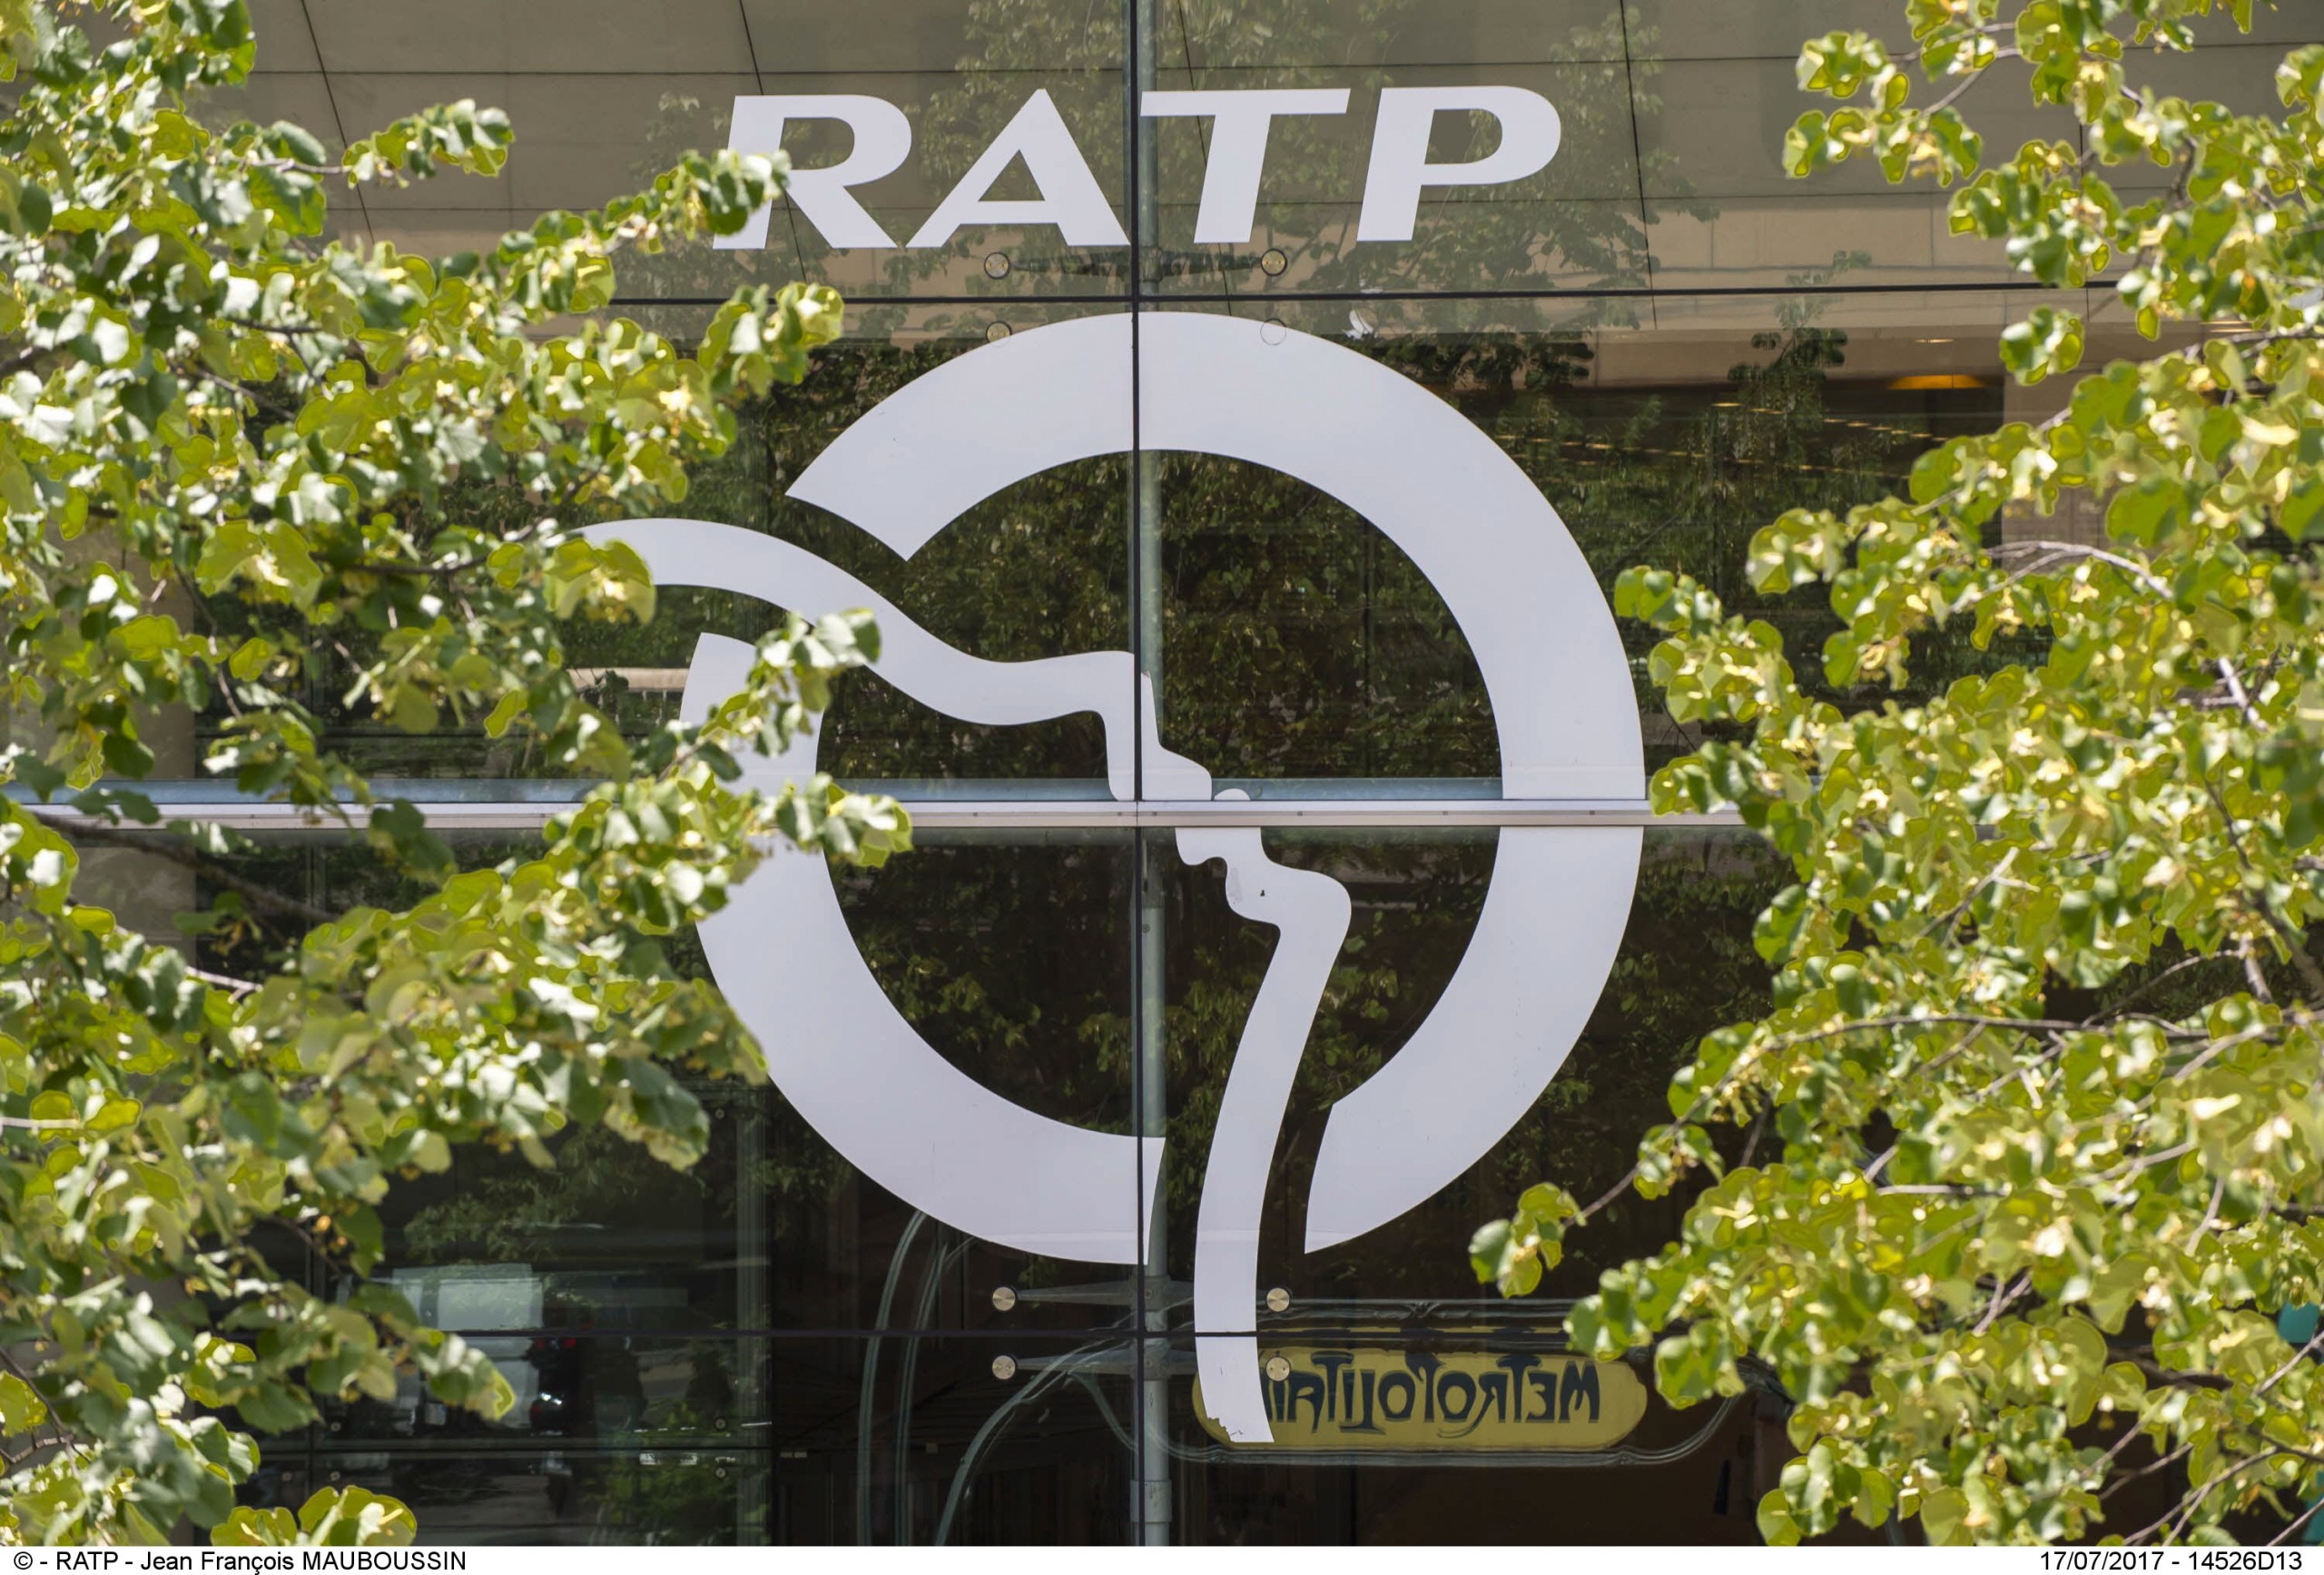 Visuel Pourquoi avoir éco-conçu le nouveau site internet du groupe RATP ?